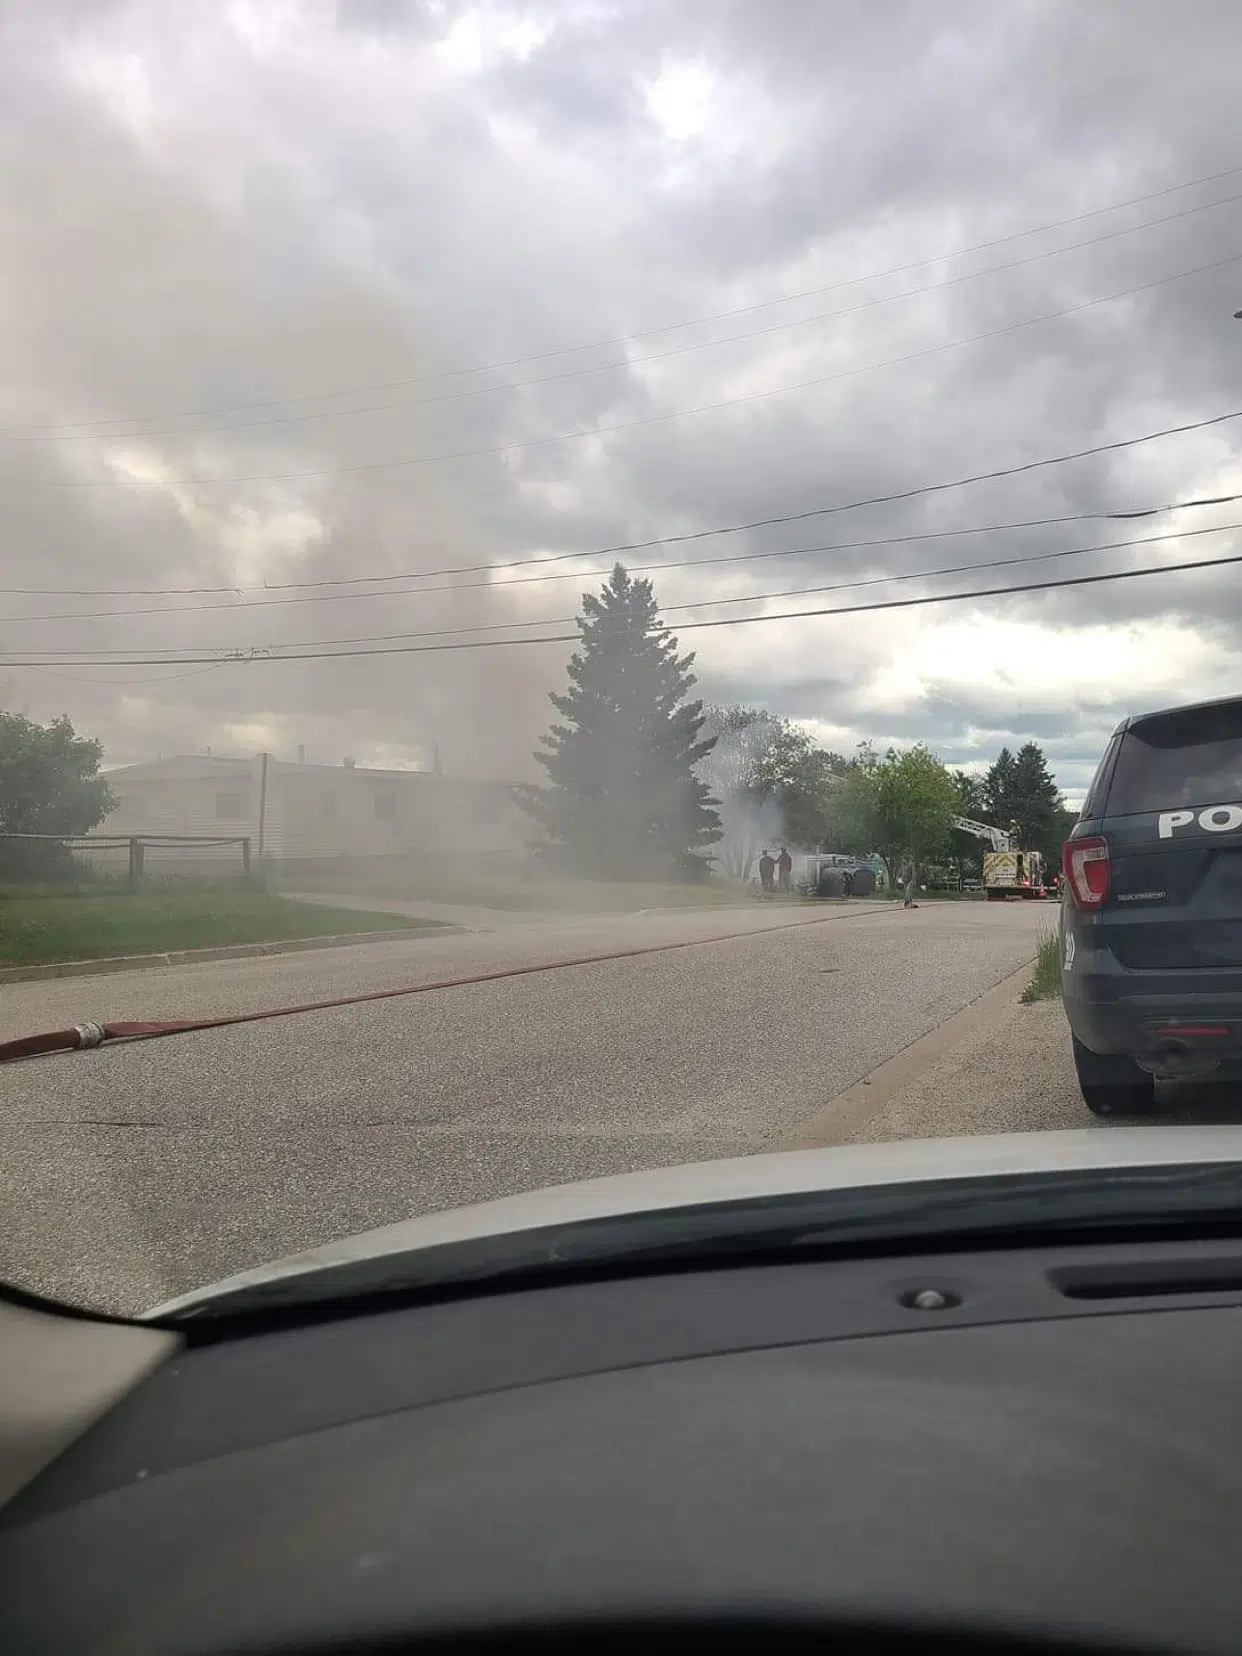 UPDATE: Dryden Fire Service Puts Out Hillcrest Fire